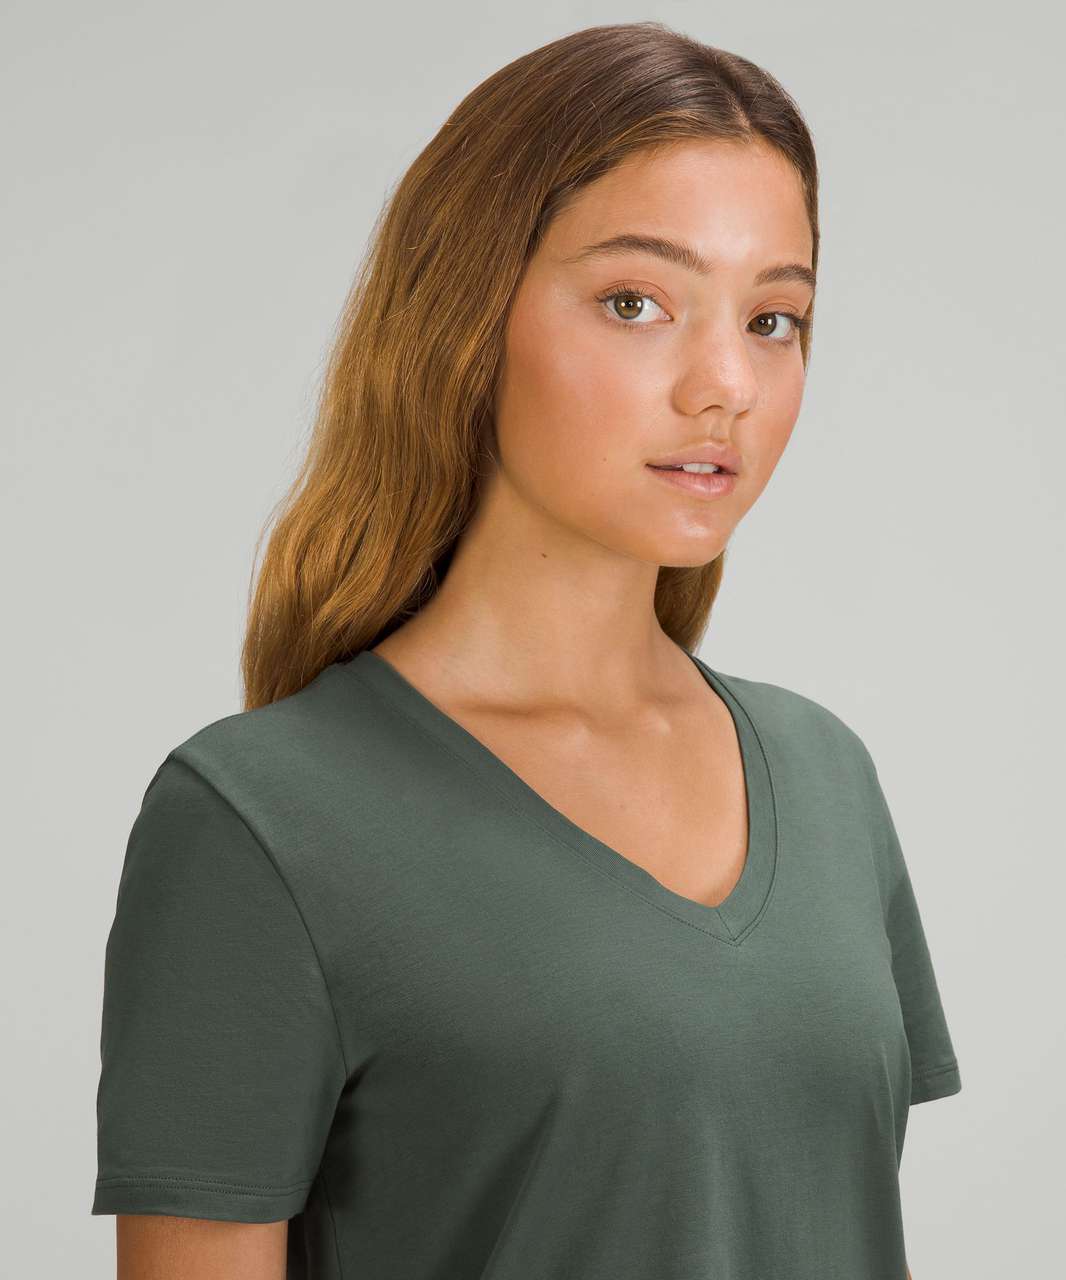 Lululemon Love Tee Short Sleeve V-Neck T-Shirt Rainforest Green Size 12/14  - $10 - From Olga